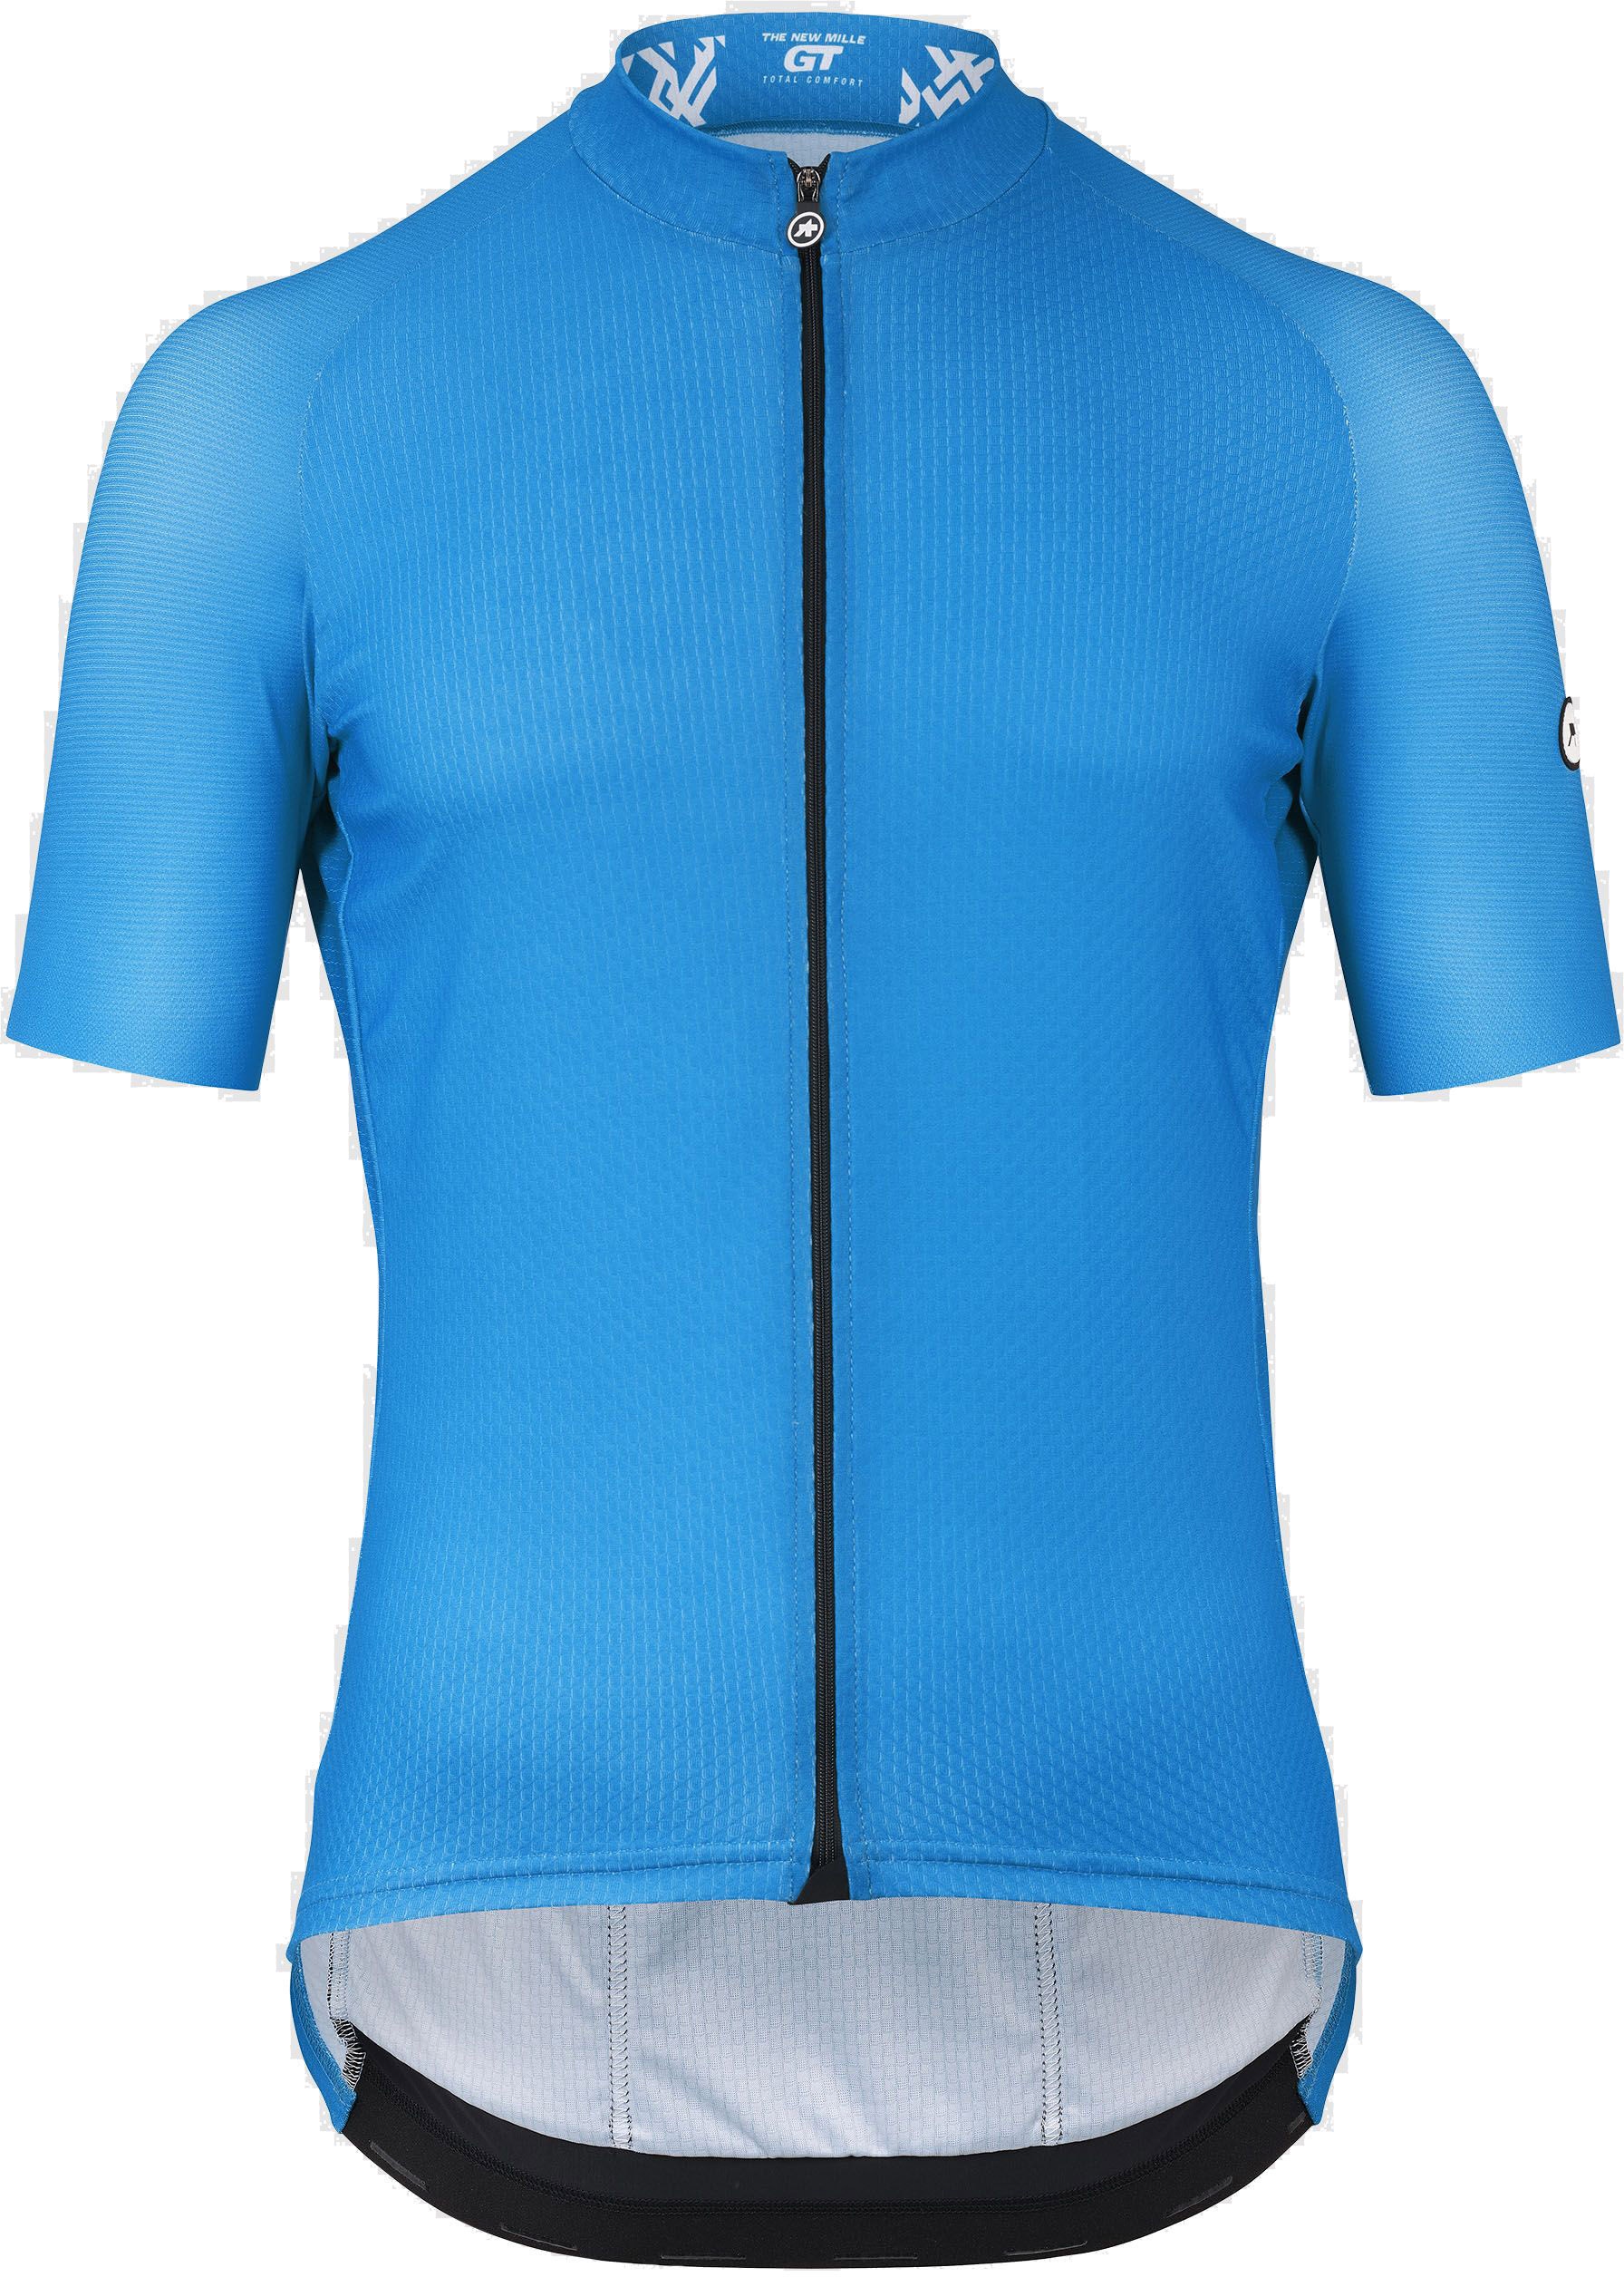 Beklædning - Cykeltrøjer - Assos MILLE GT Jersey C2 - Blå